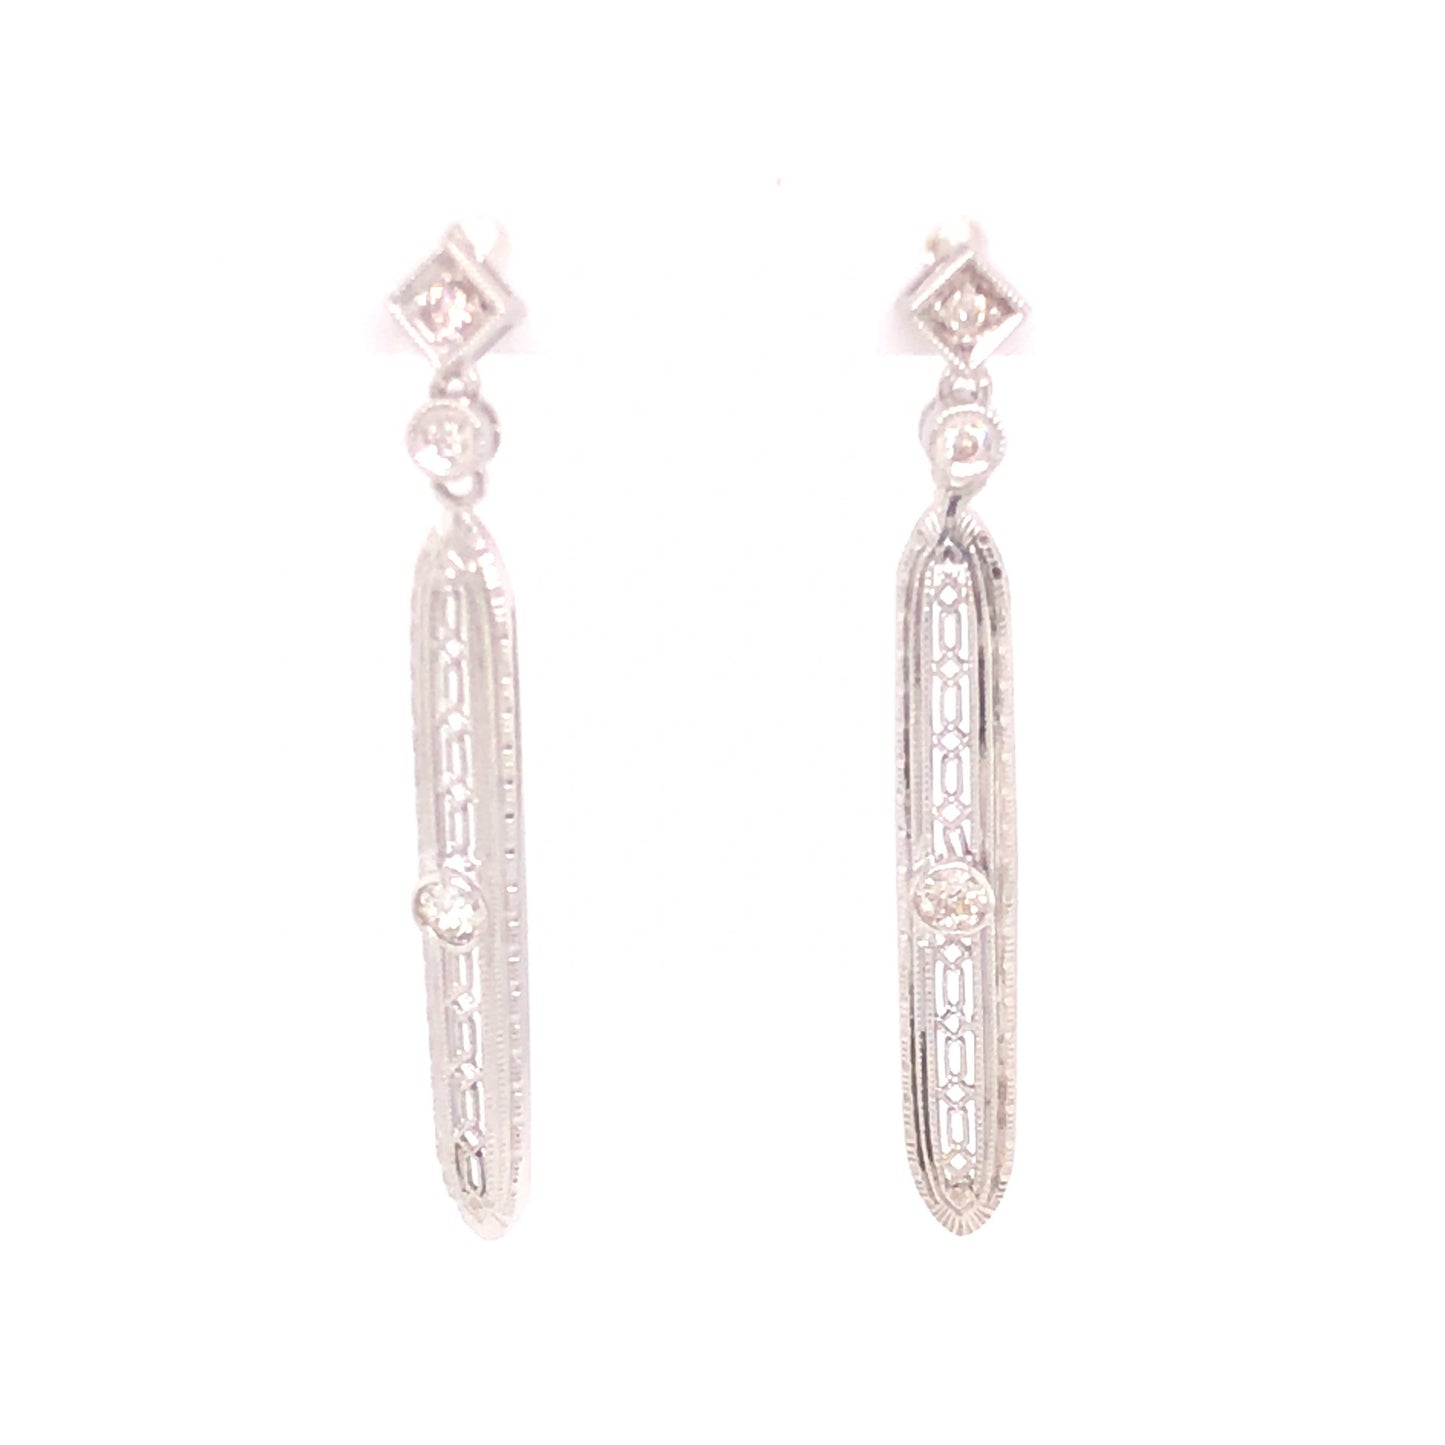 .26 Art Deco Diamond Earrings in 18k White Gold